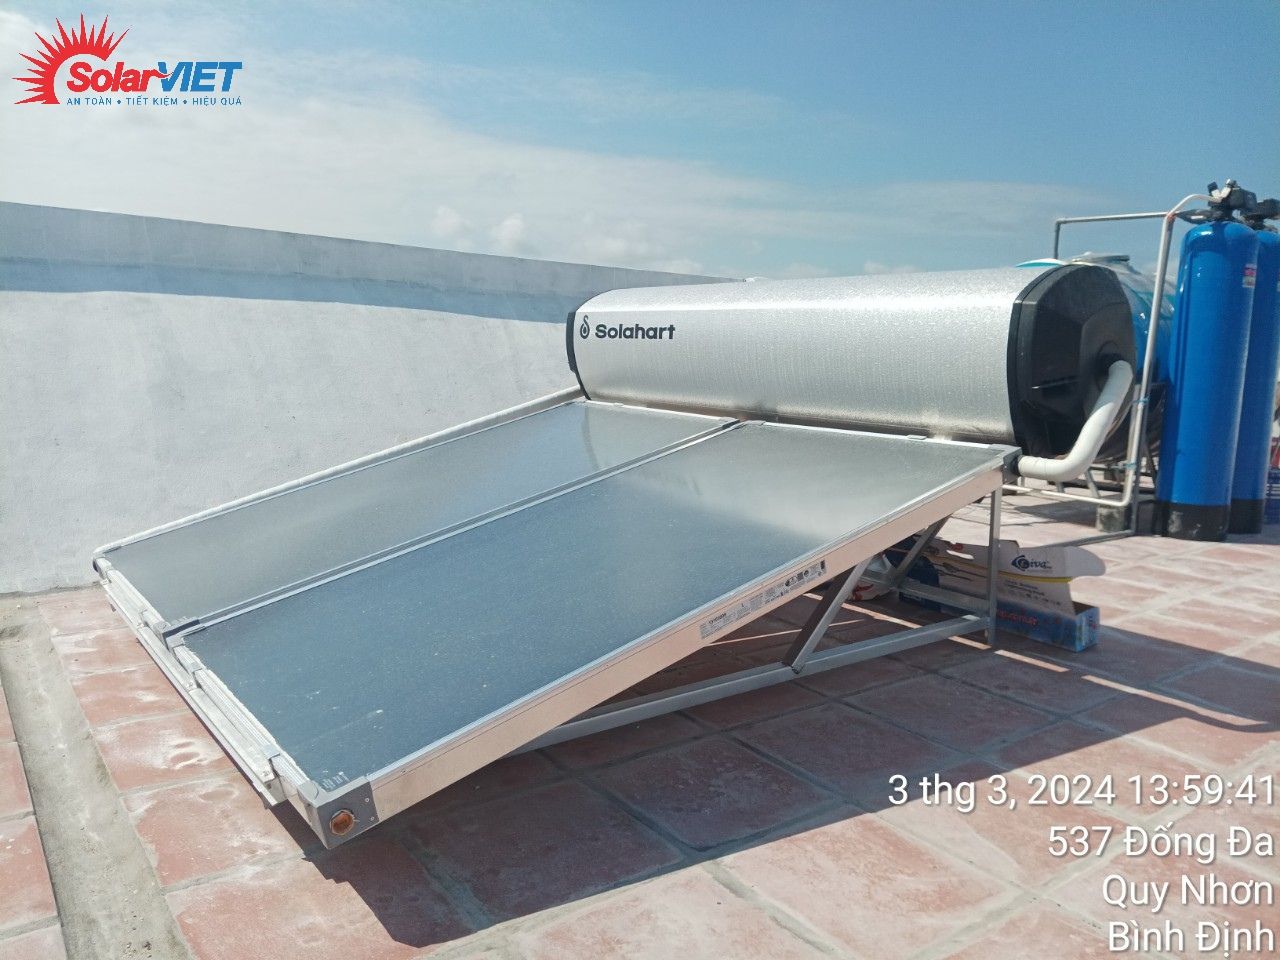 Giá máy năng lượng mặt trời Solahart- Chương trình khuyến mãi ưu đãi sốc.